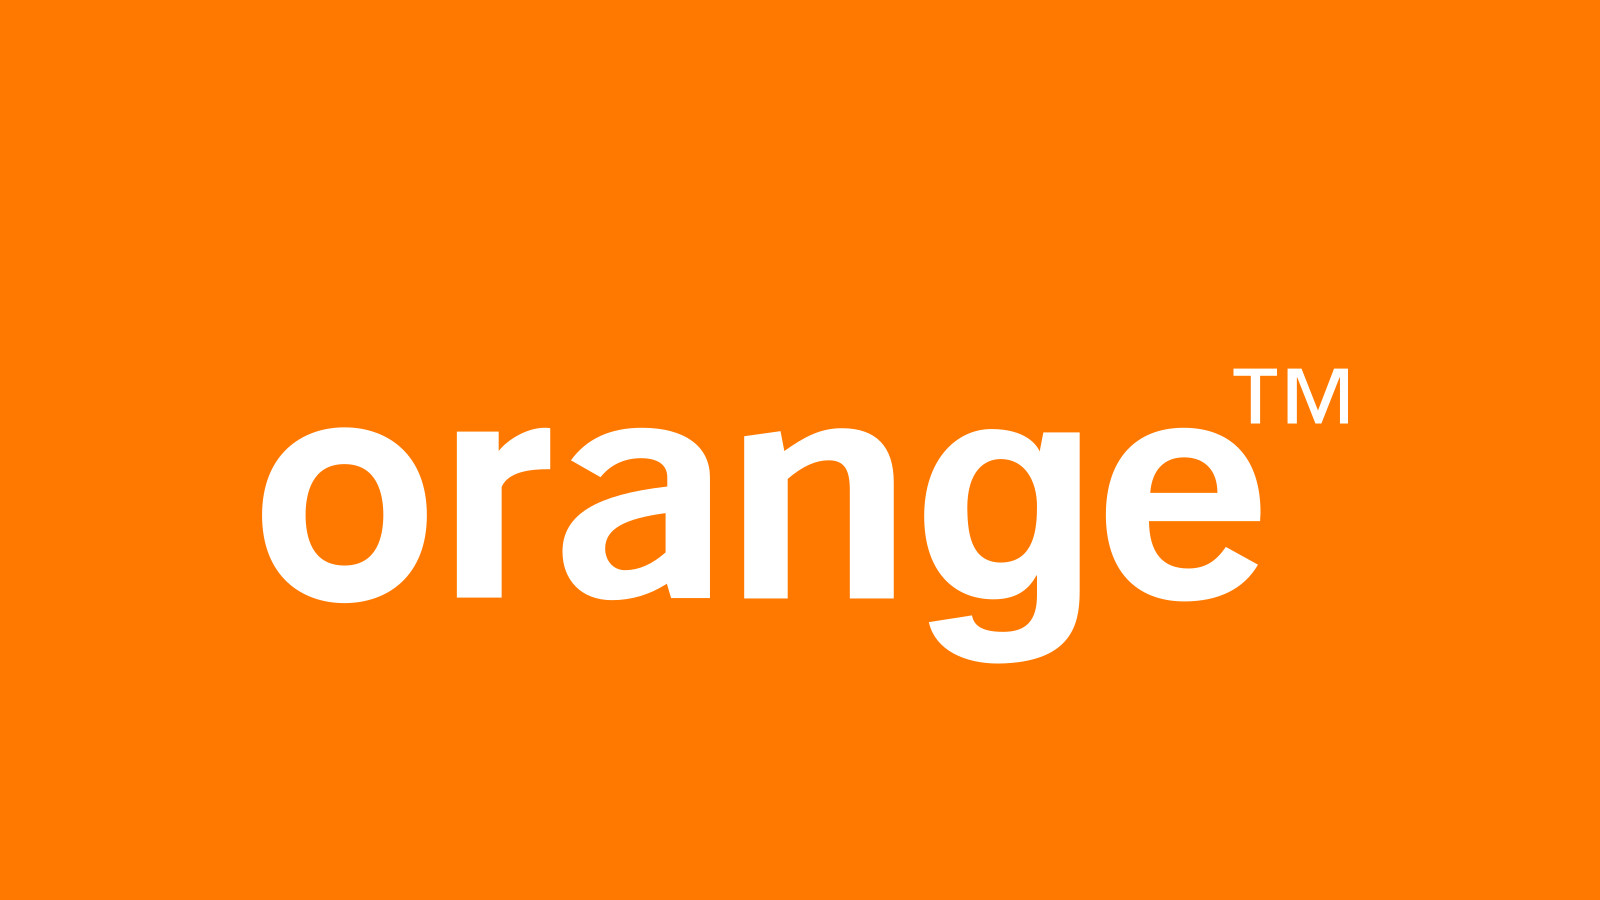 Orange 100 PLN Mobile Top-up PL